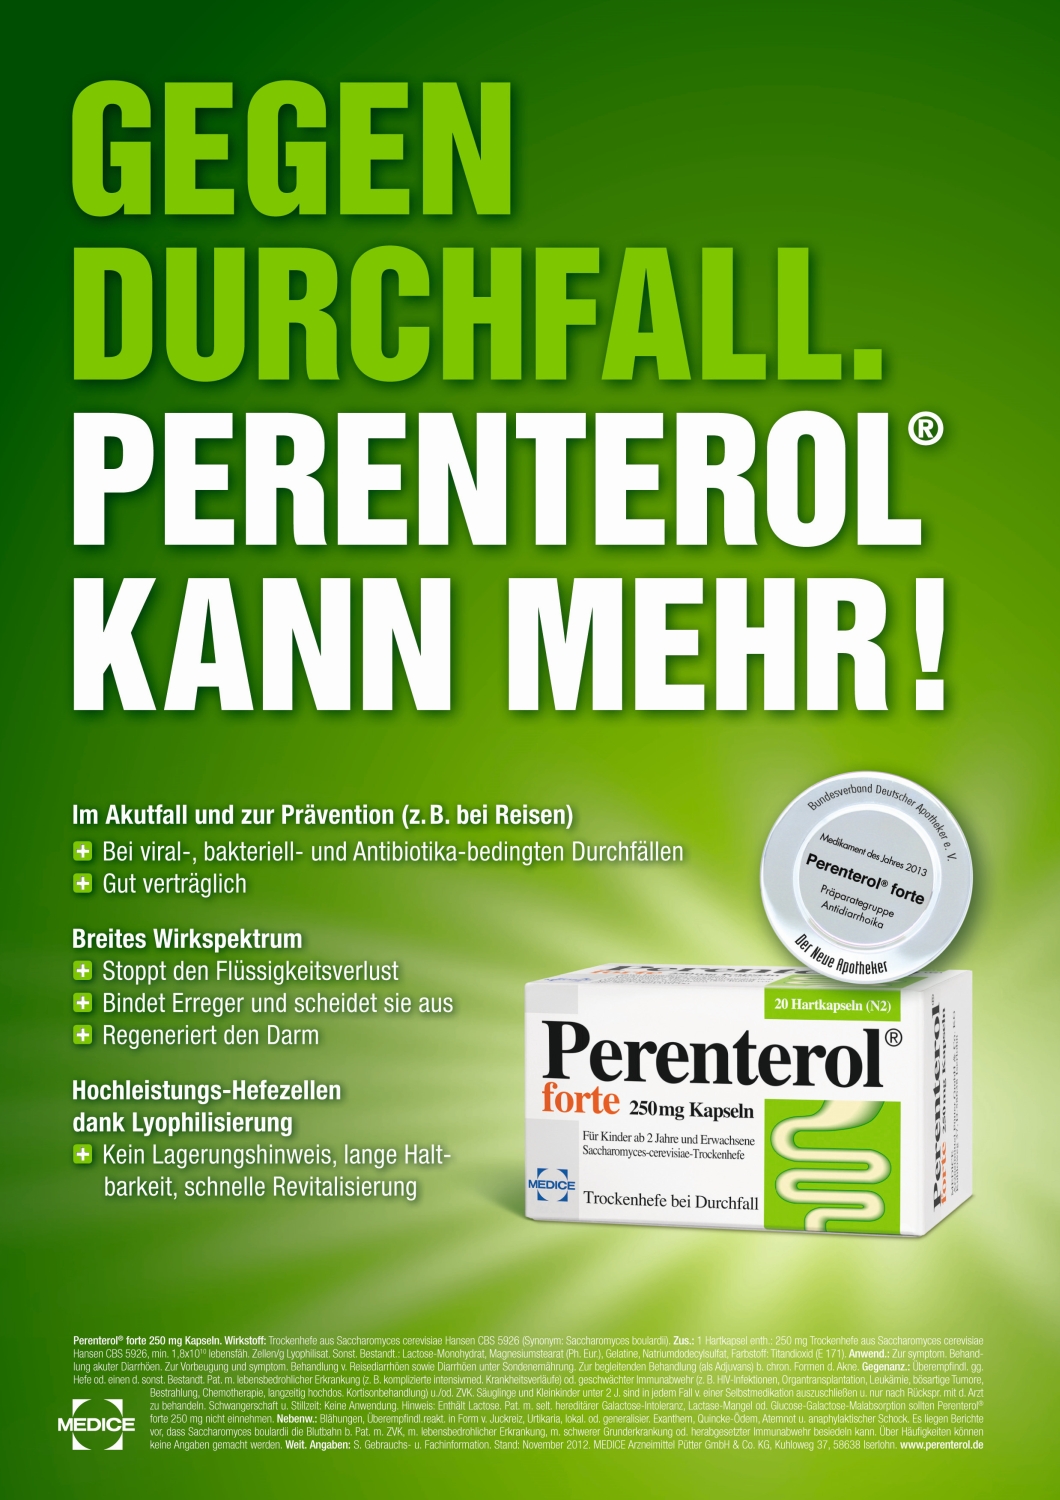 News - Central: Perenterol kann mehr: WEFRA gewinnt weiteren Etat des Pharmaunternehmens MEDICE